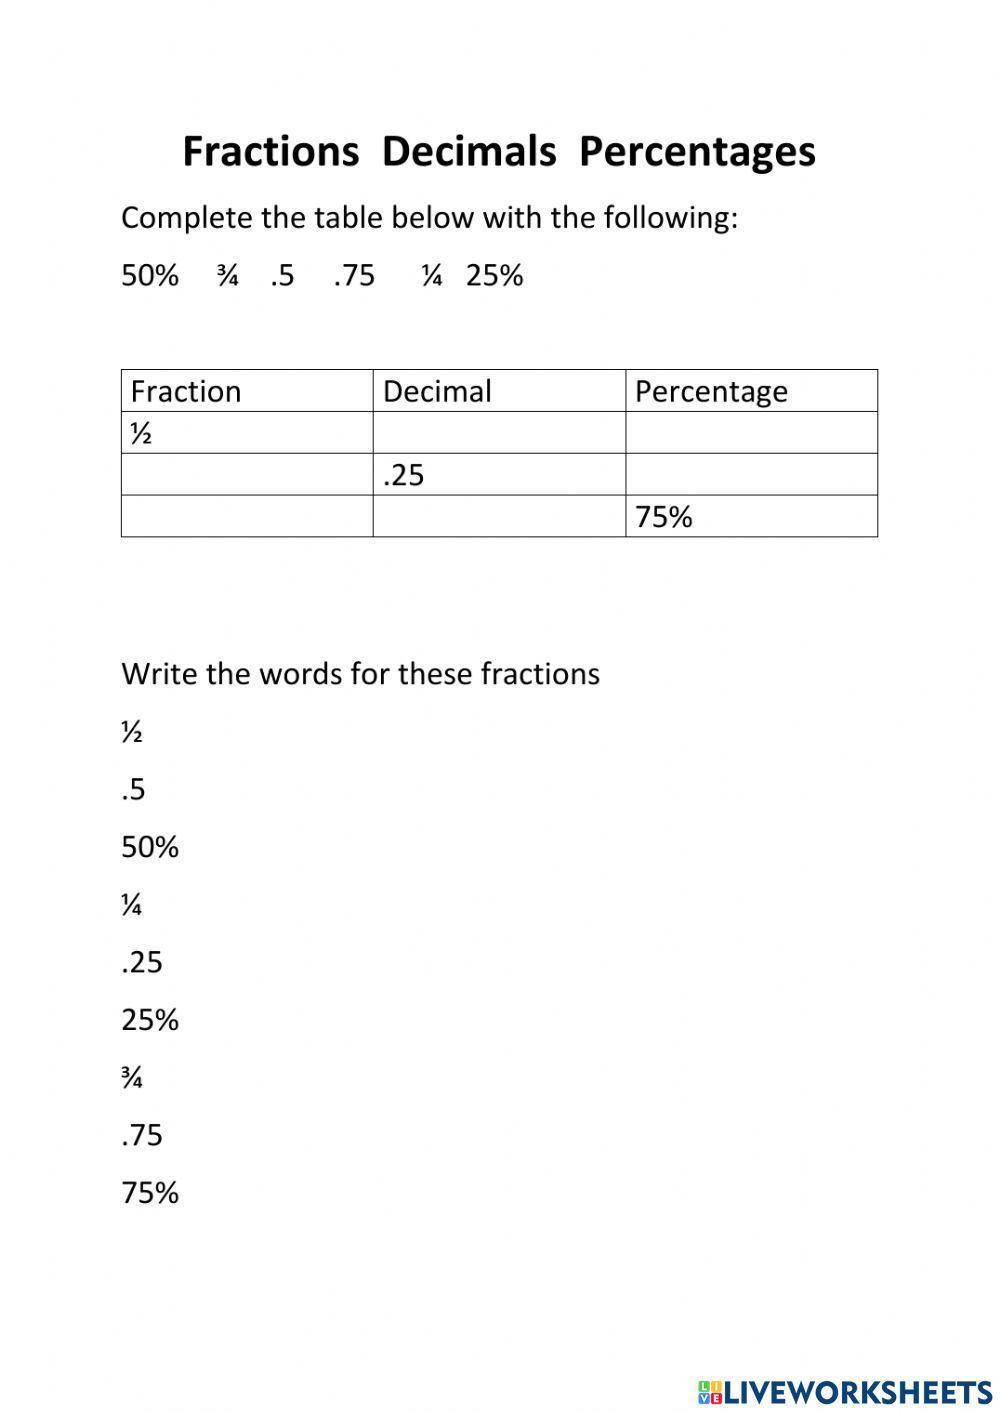 Fractions, decimals, percentages